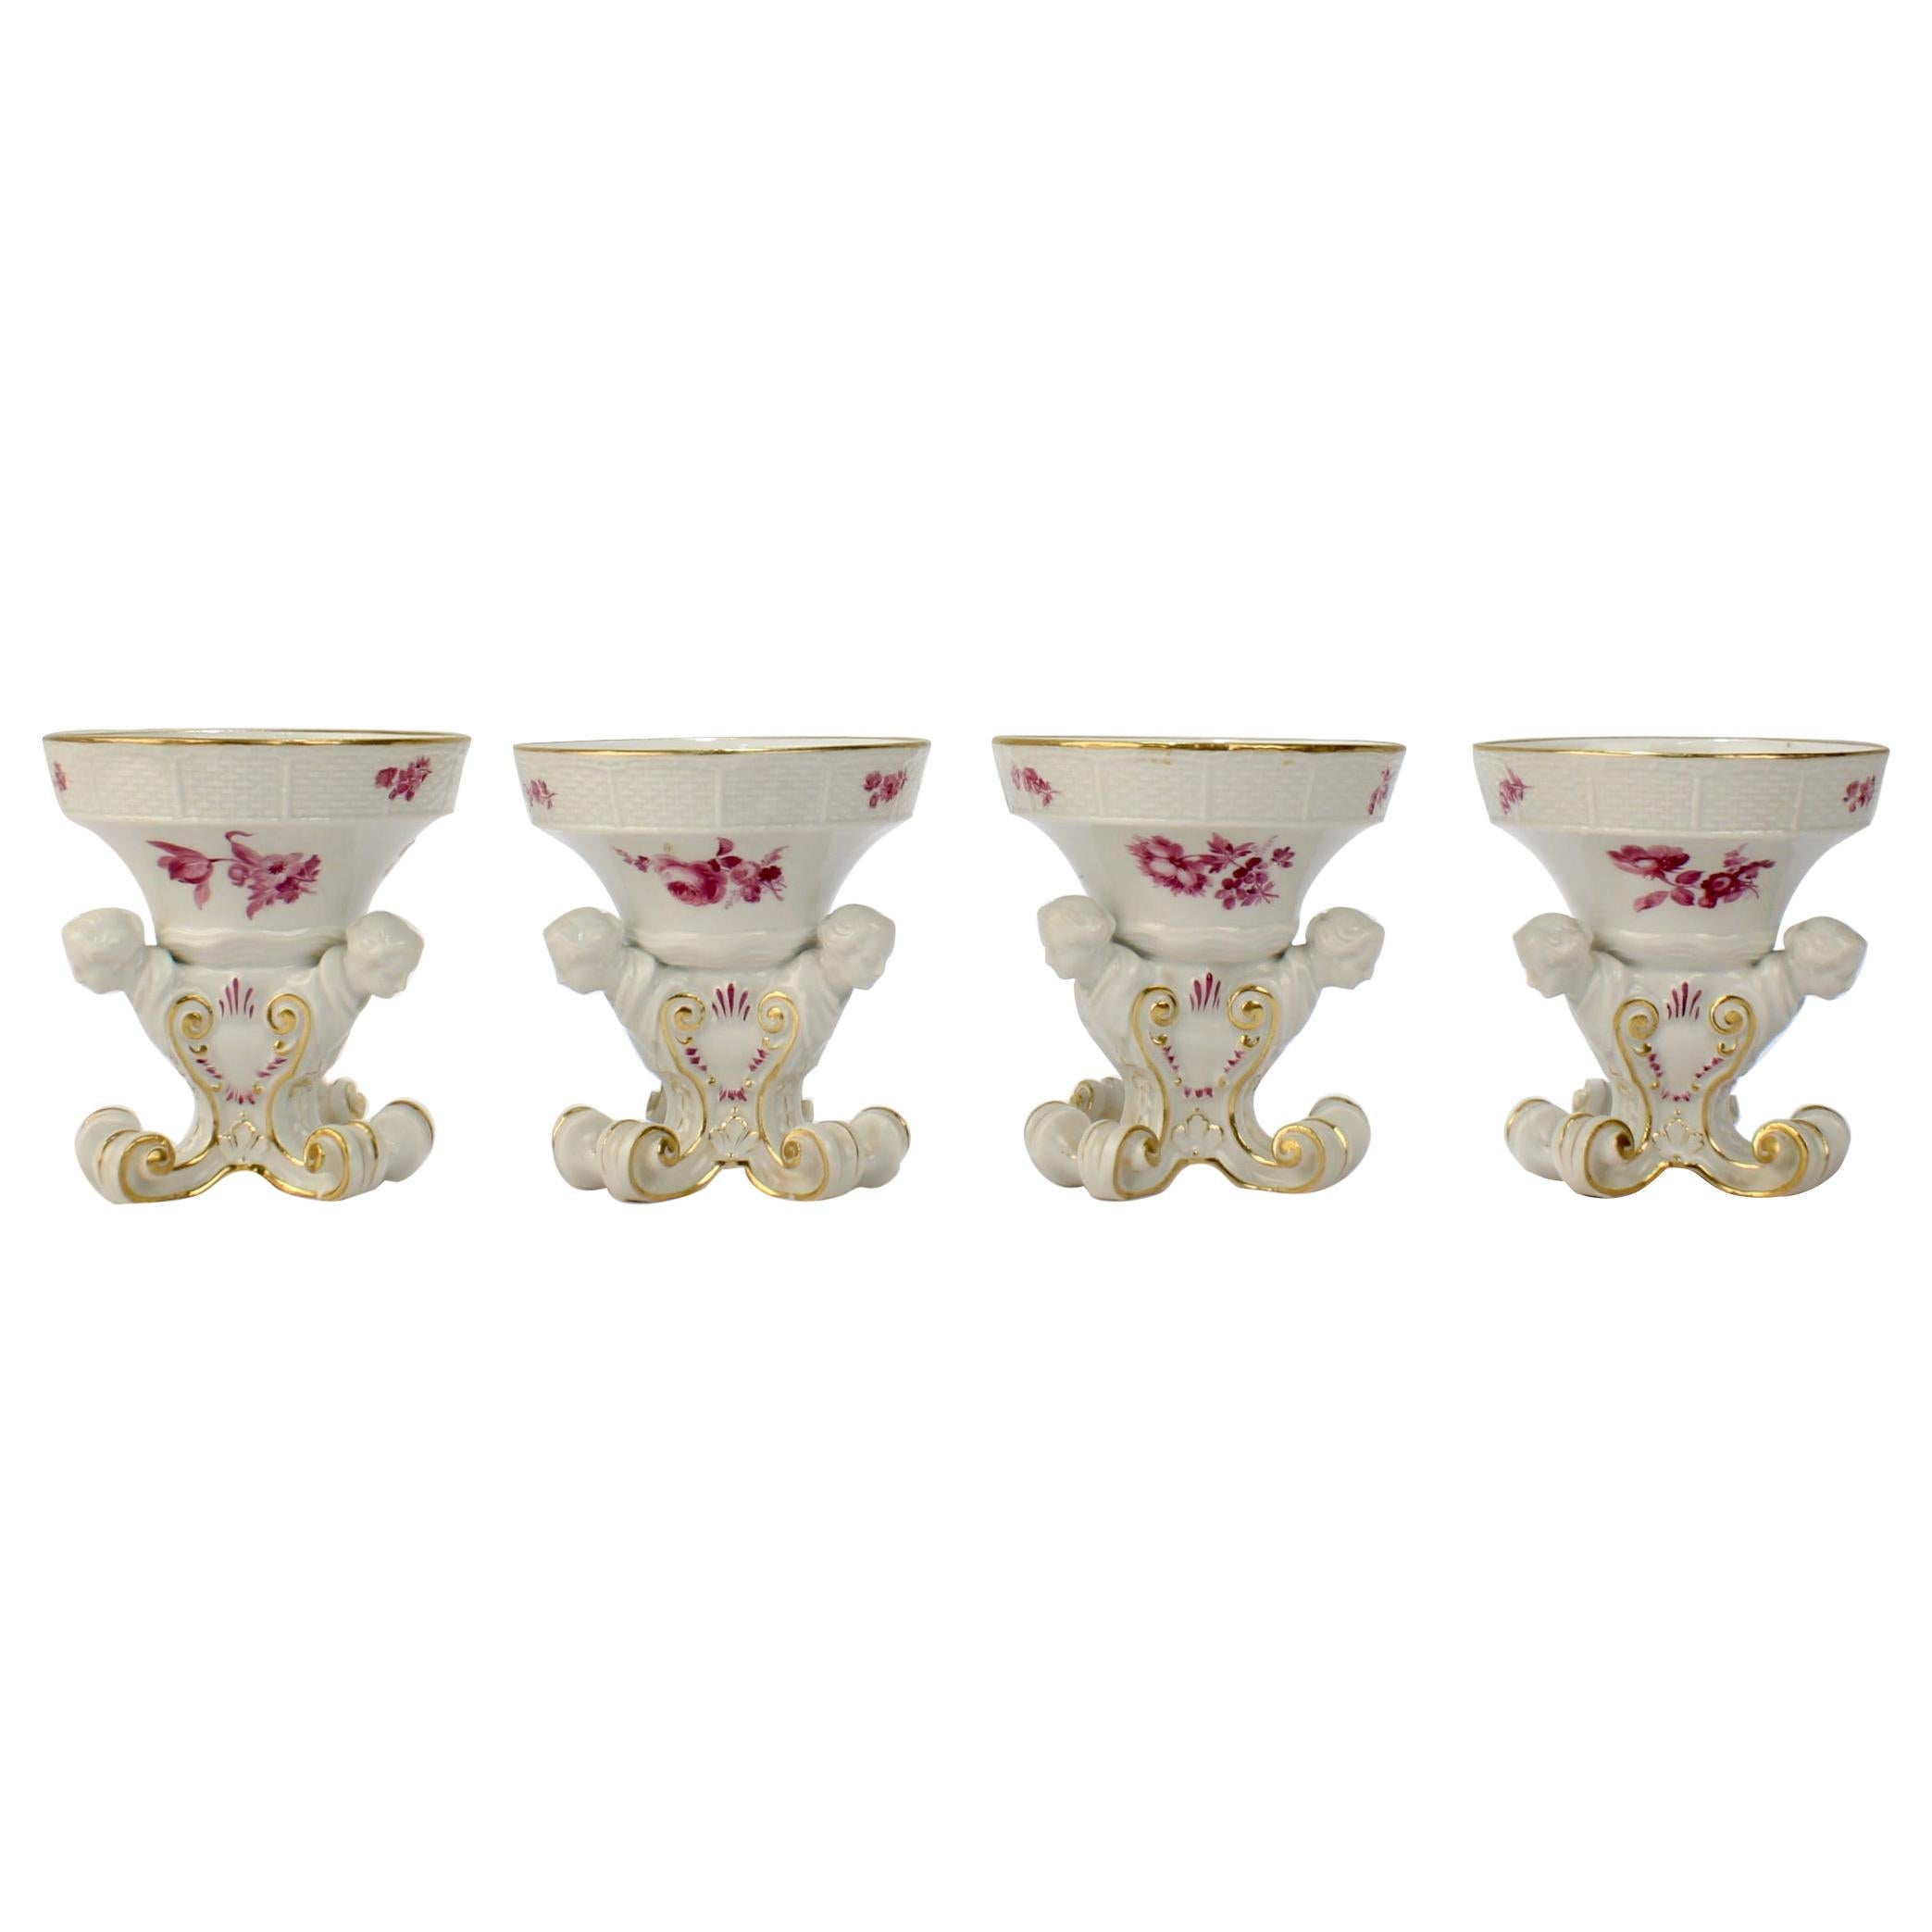 4 salières sur pied Frauenkopf en porcelaine de Meissen antiques avec fleurs de Puce